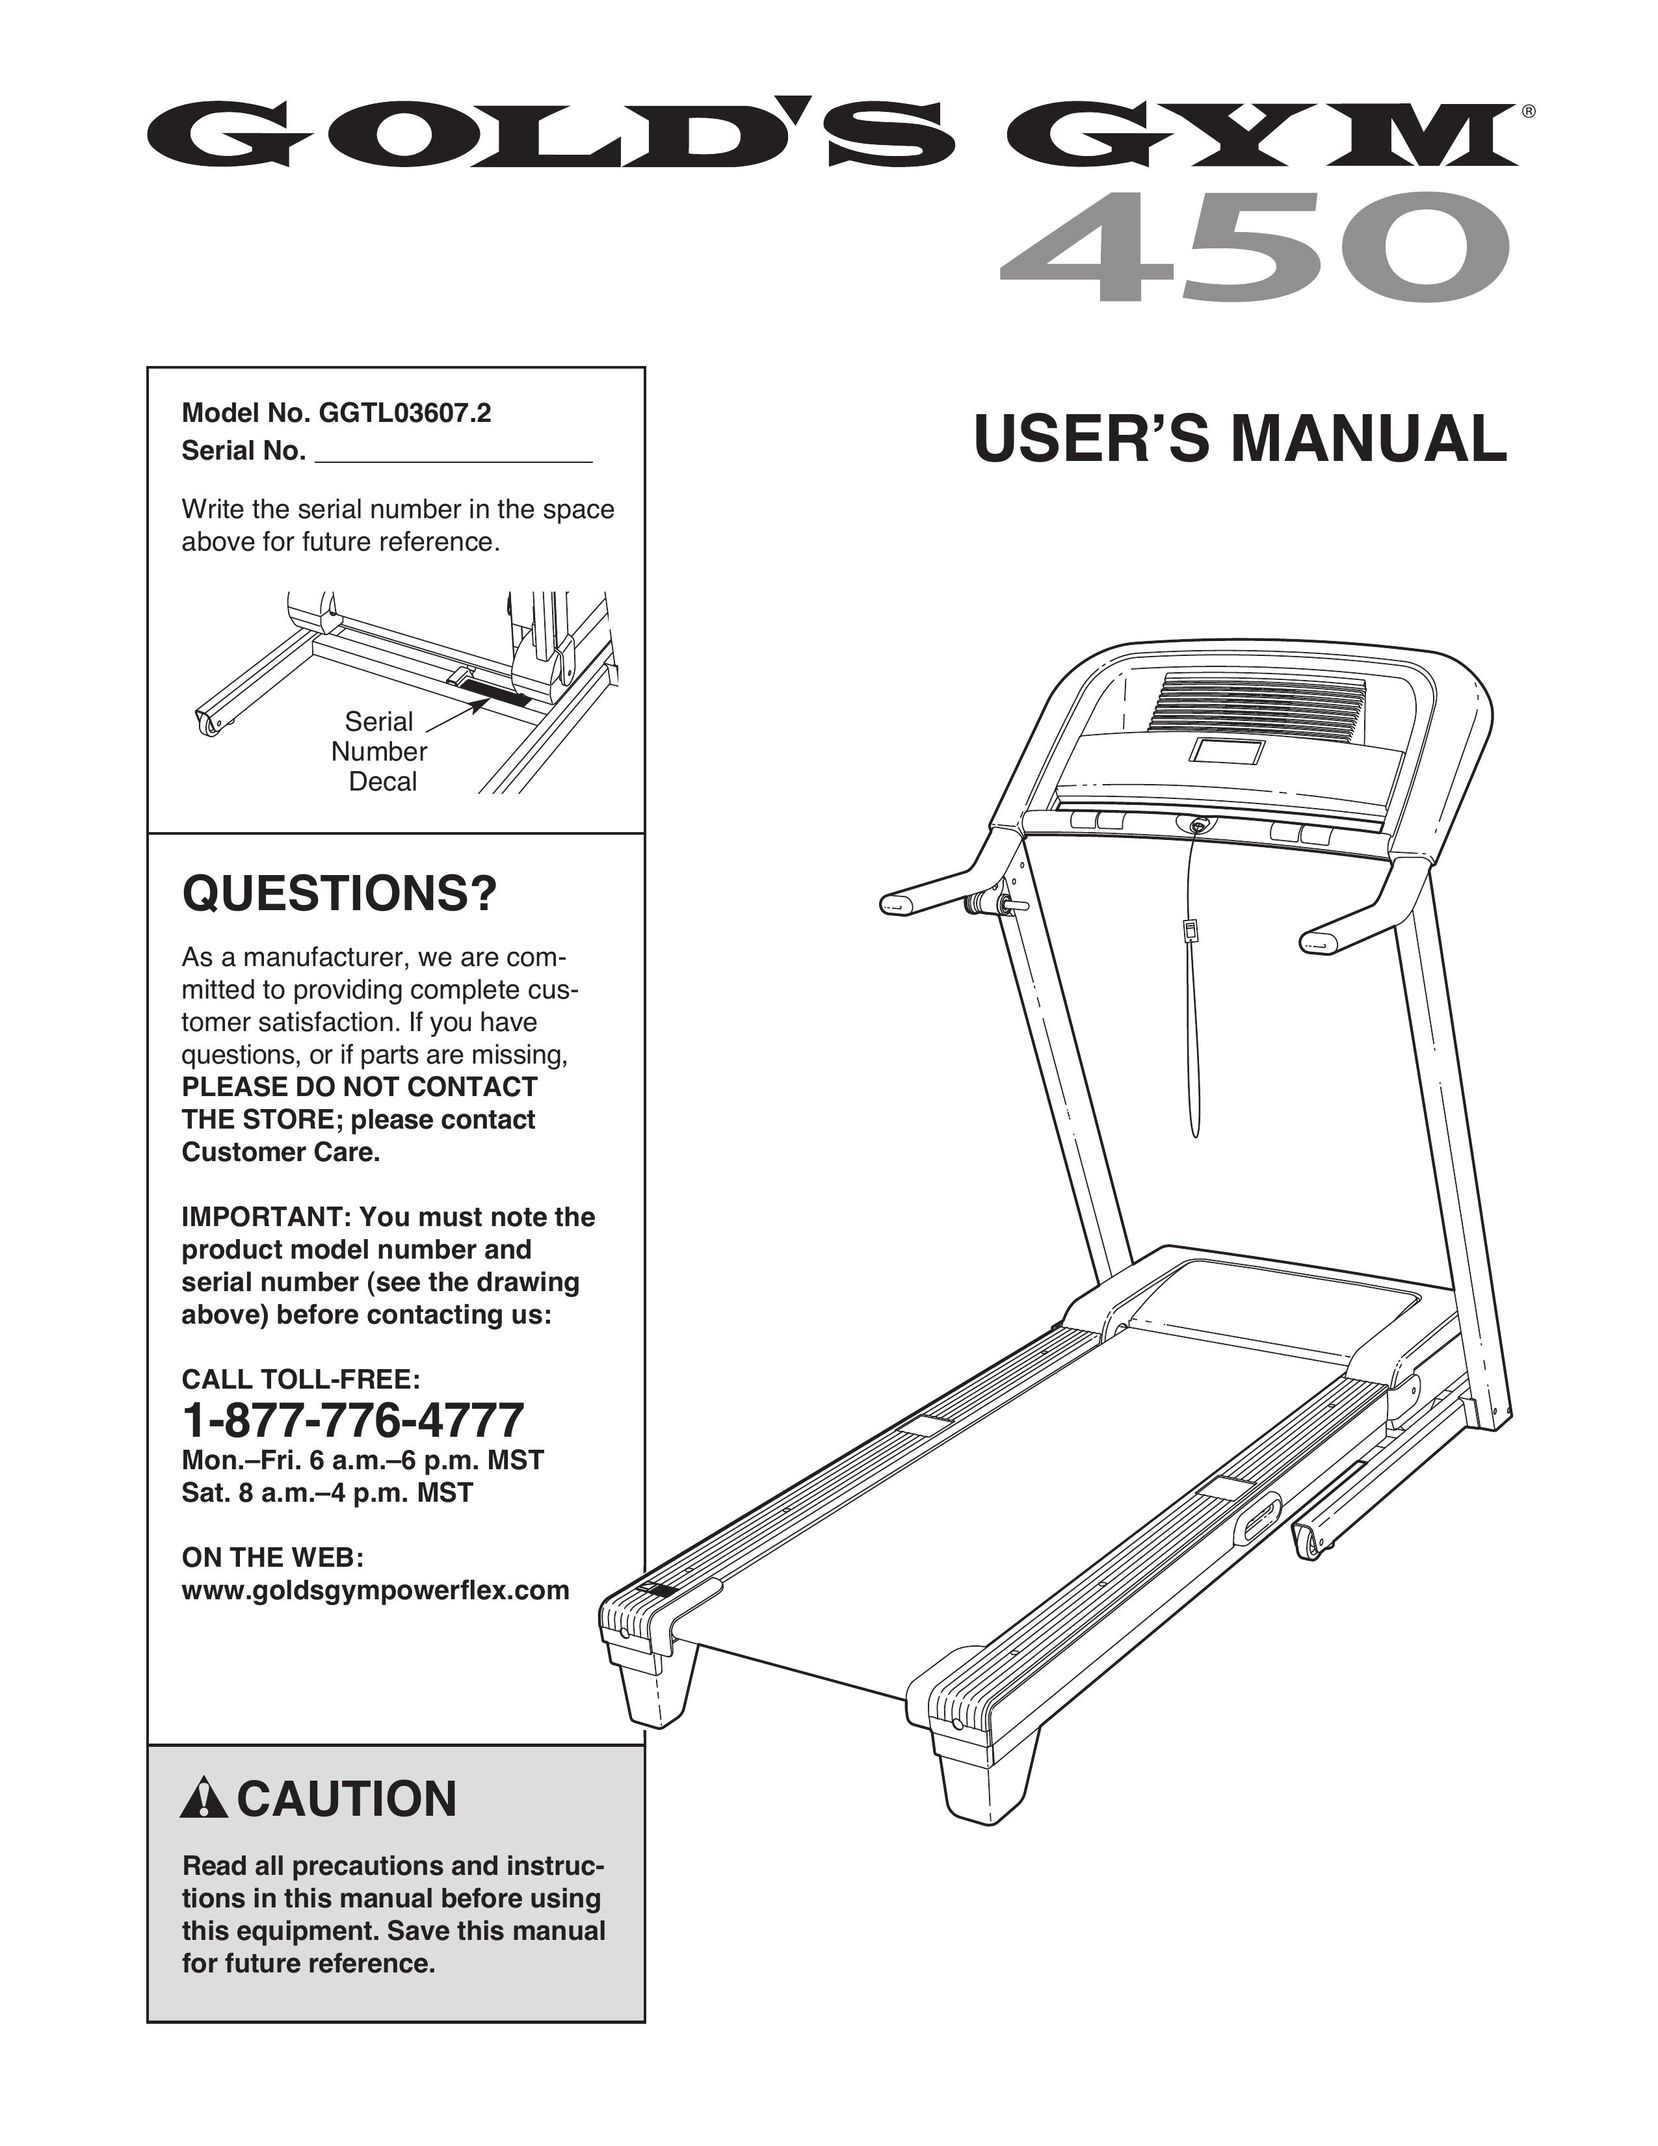 Gold's Gym GGTL03607.2 Treadmill User Manual